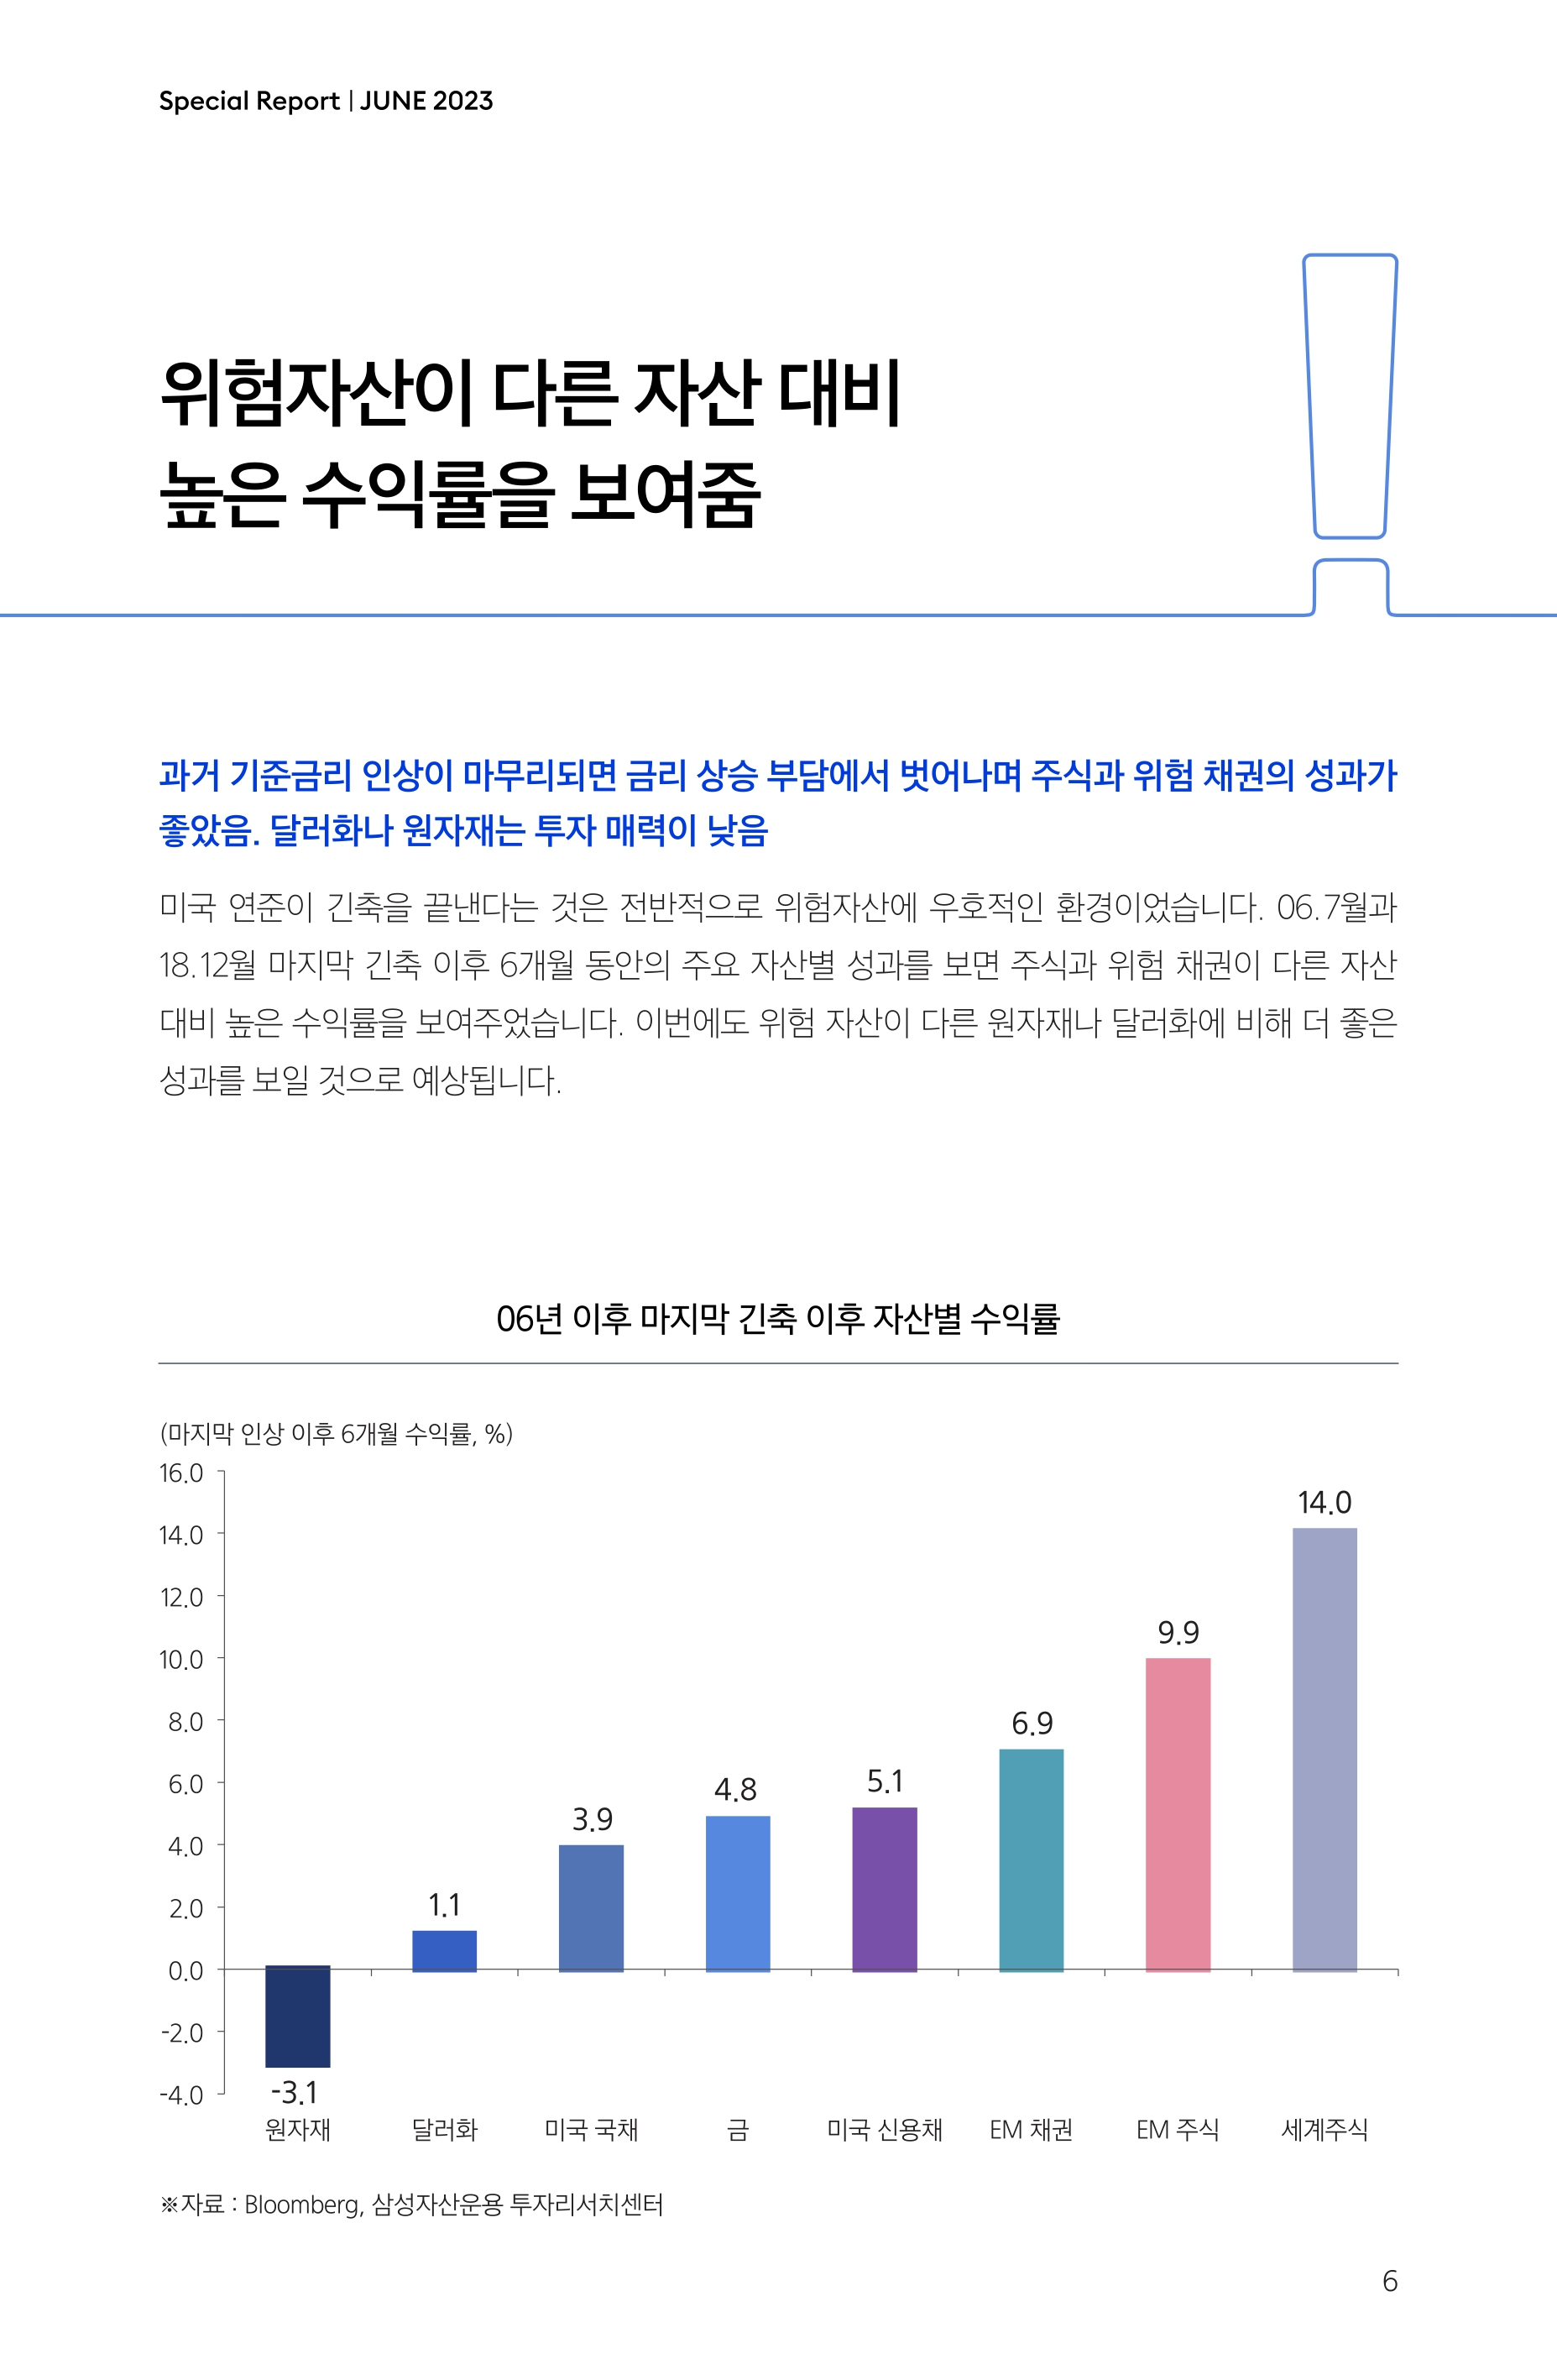 Samsung Global Market Outlook(낱장)_202306_page-0006.jpg